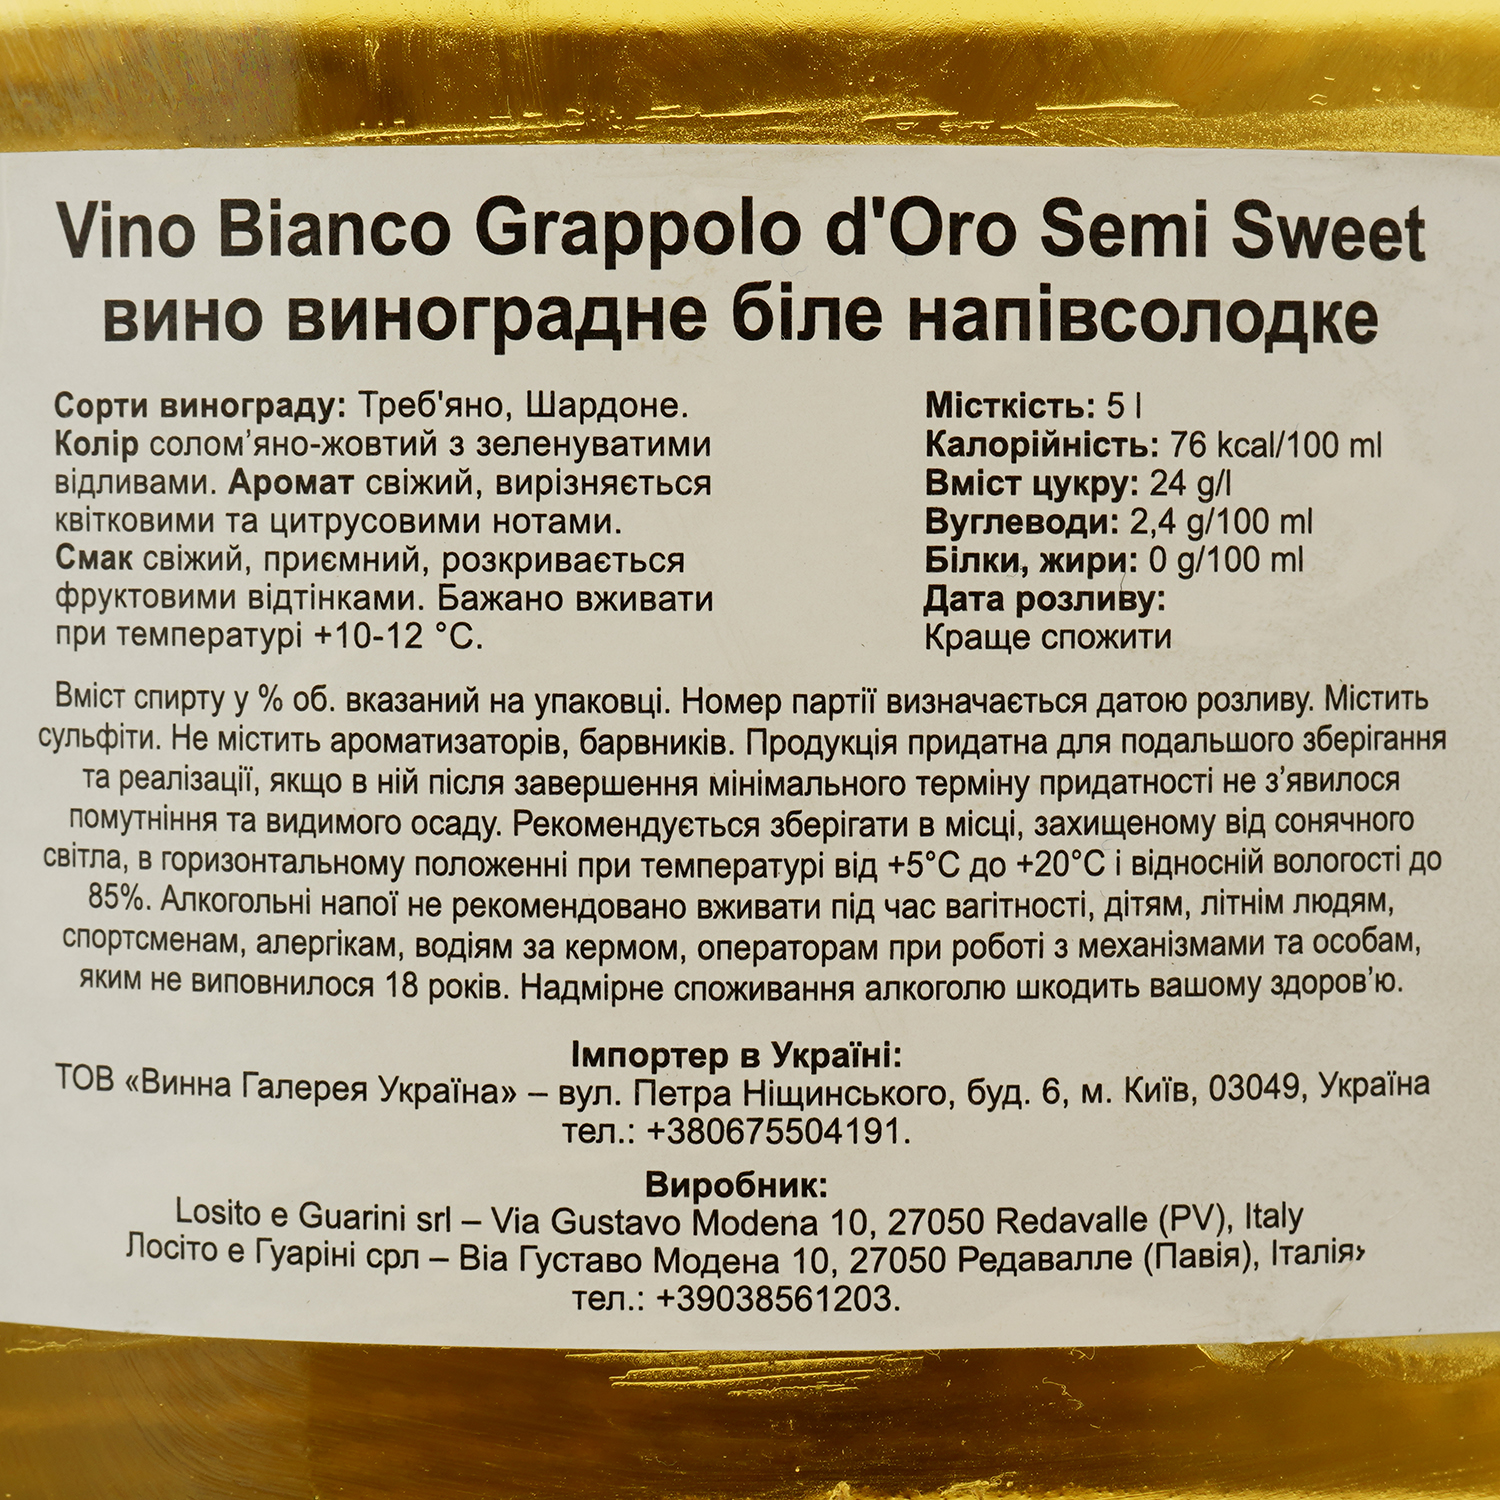 Вино Vino Bianco Grappolo d'Oro Semi Sweet, белое, полусладкое, 5 л - фото 3